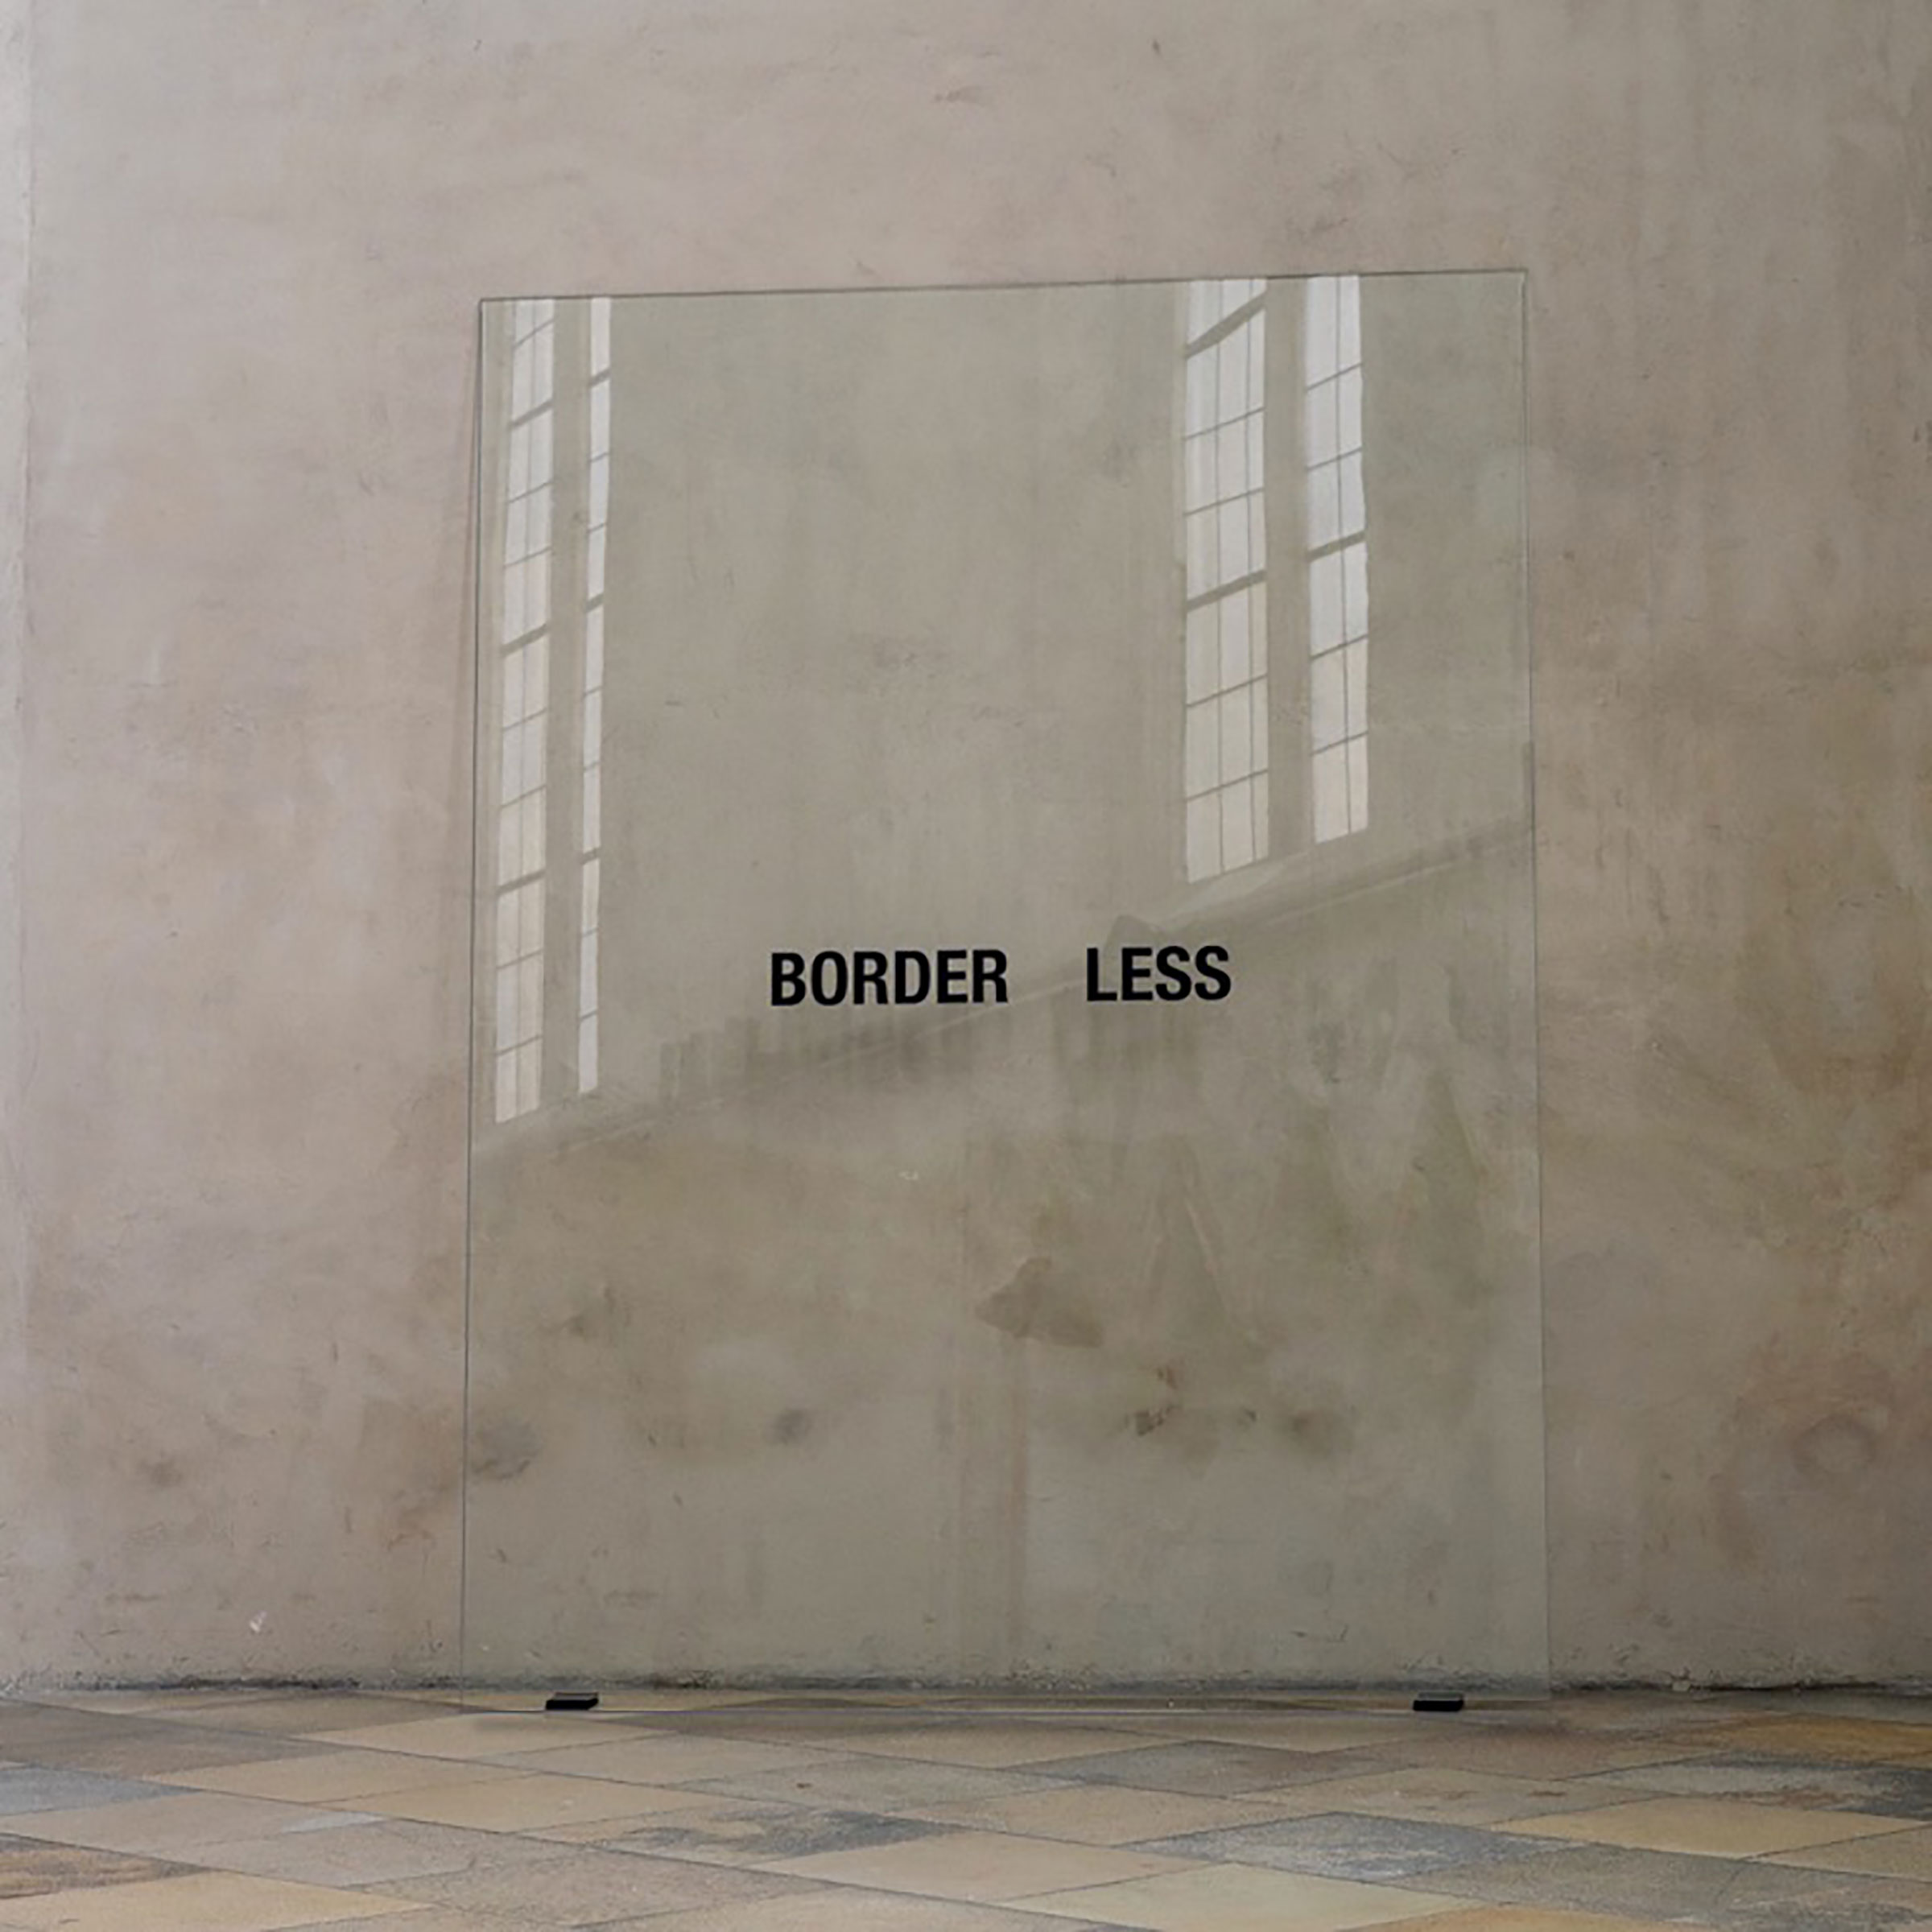 BORDER LESS<br>2019, Hinterglasmalerei / reverse glass painting, 240x180cm. Ausstellung REDEN SCHWEIGEN WOVON, Museum Krems